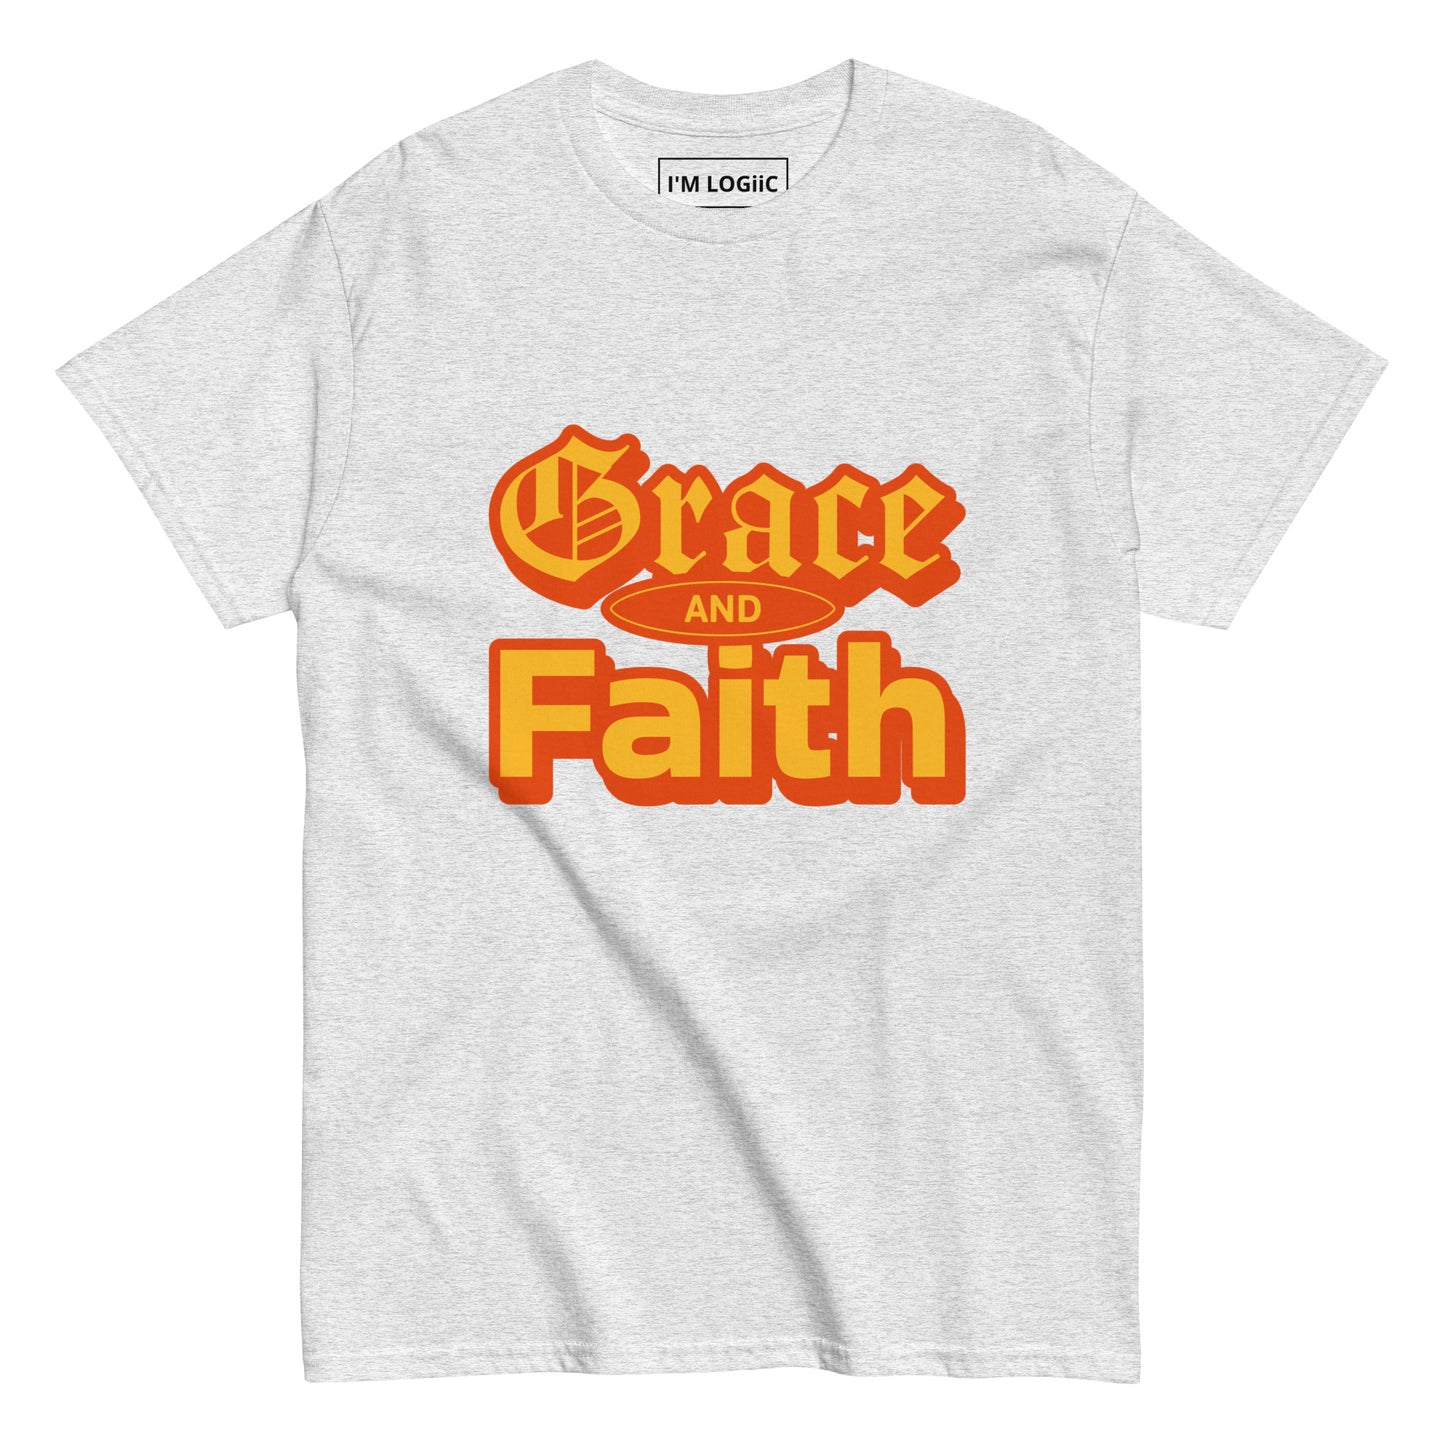 Grace and Faith classic tee